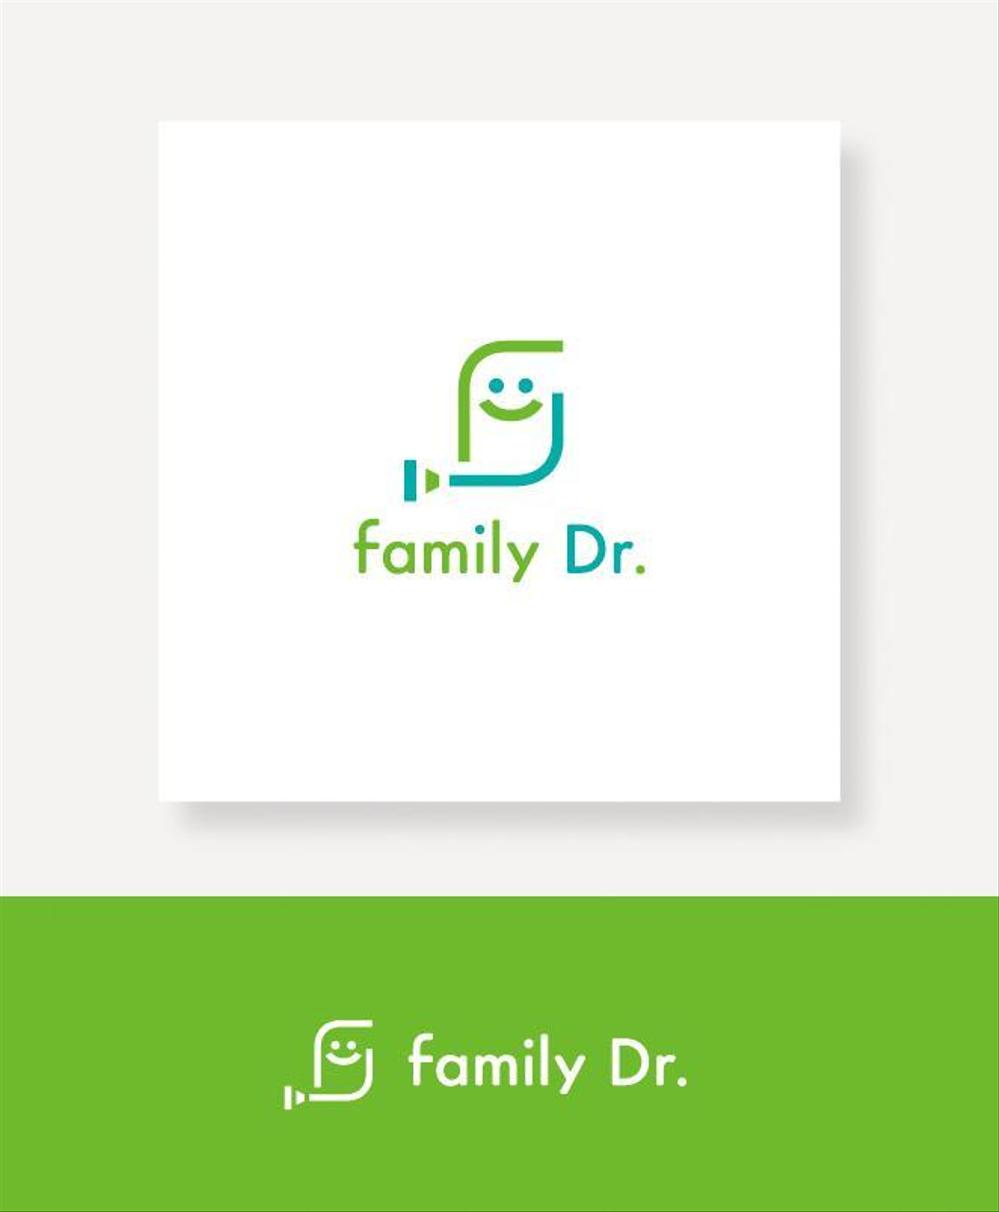 smk-family-dr-001.jpg